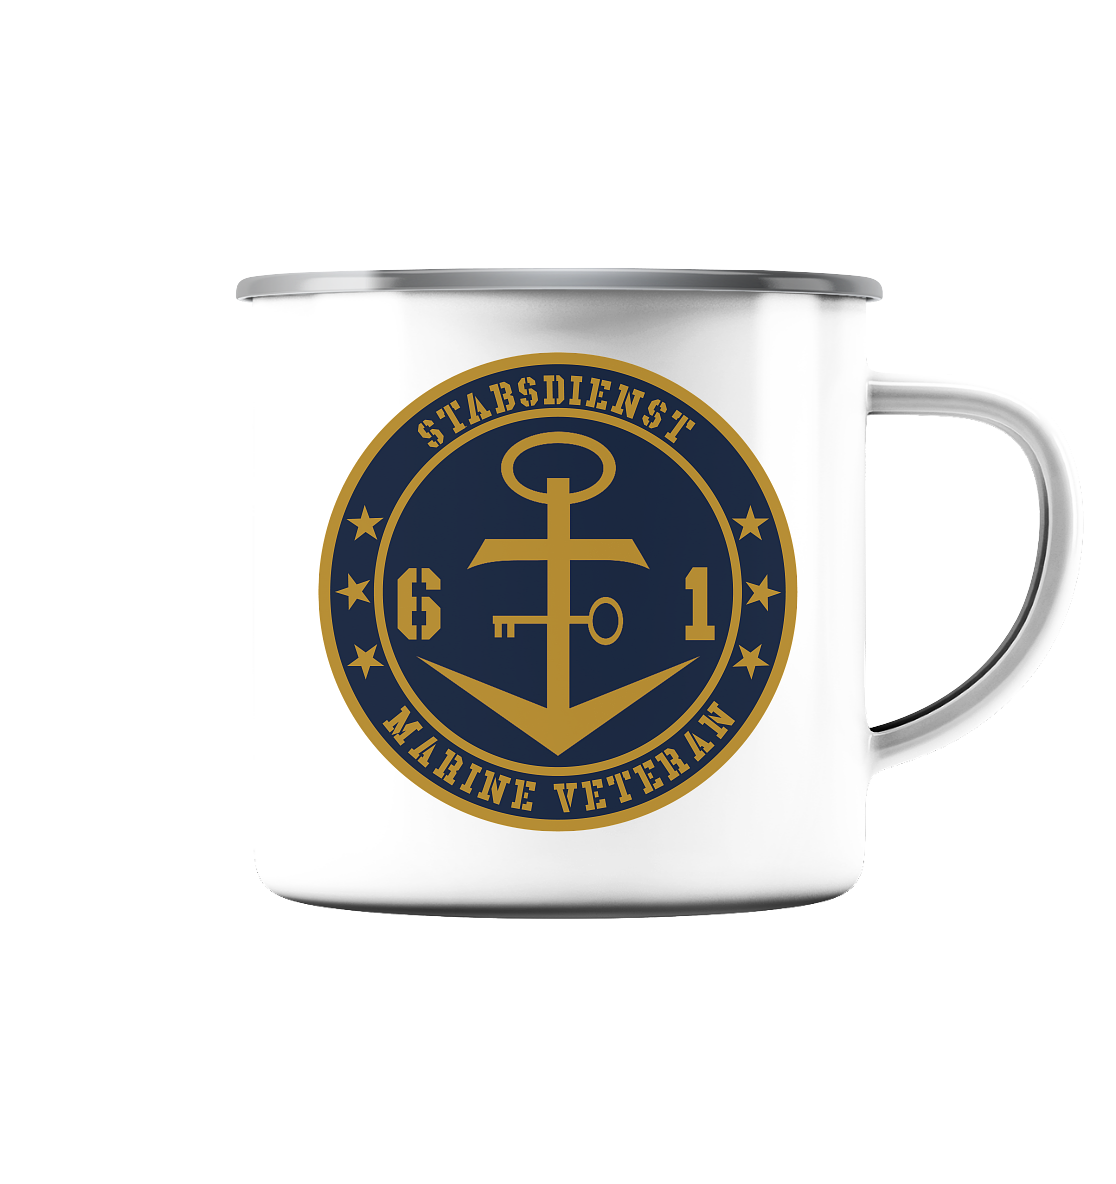 Marine Veteran 61er STABSDIENST - Emaille Tasse (Silber)